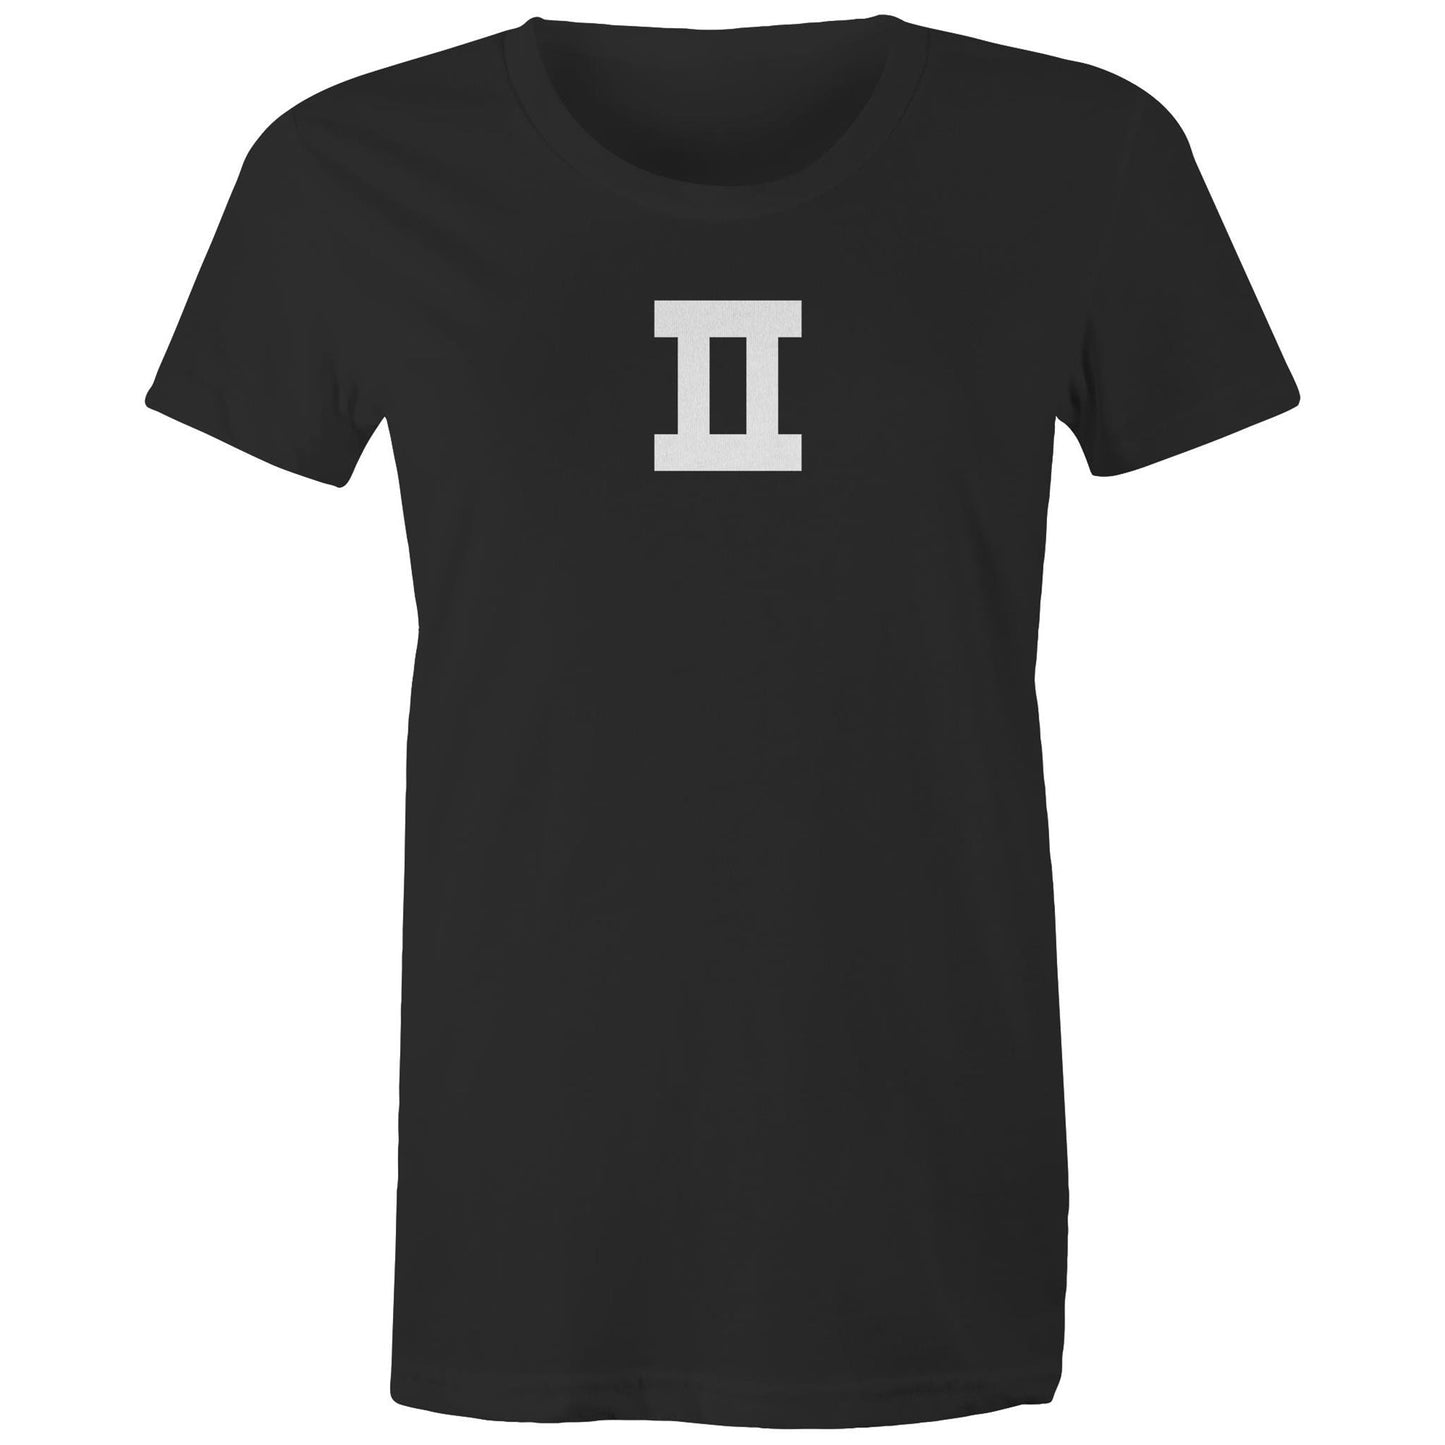 Gemini T Shirts for Women